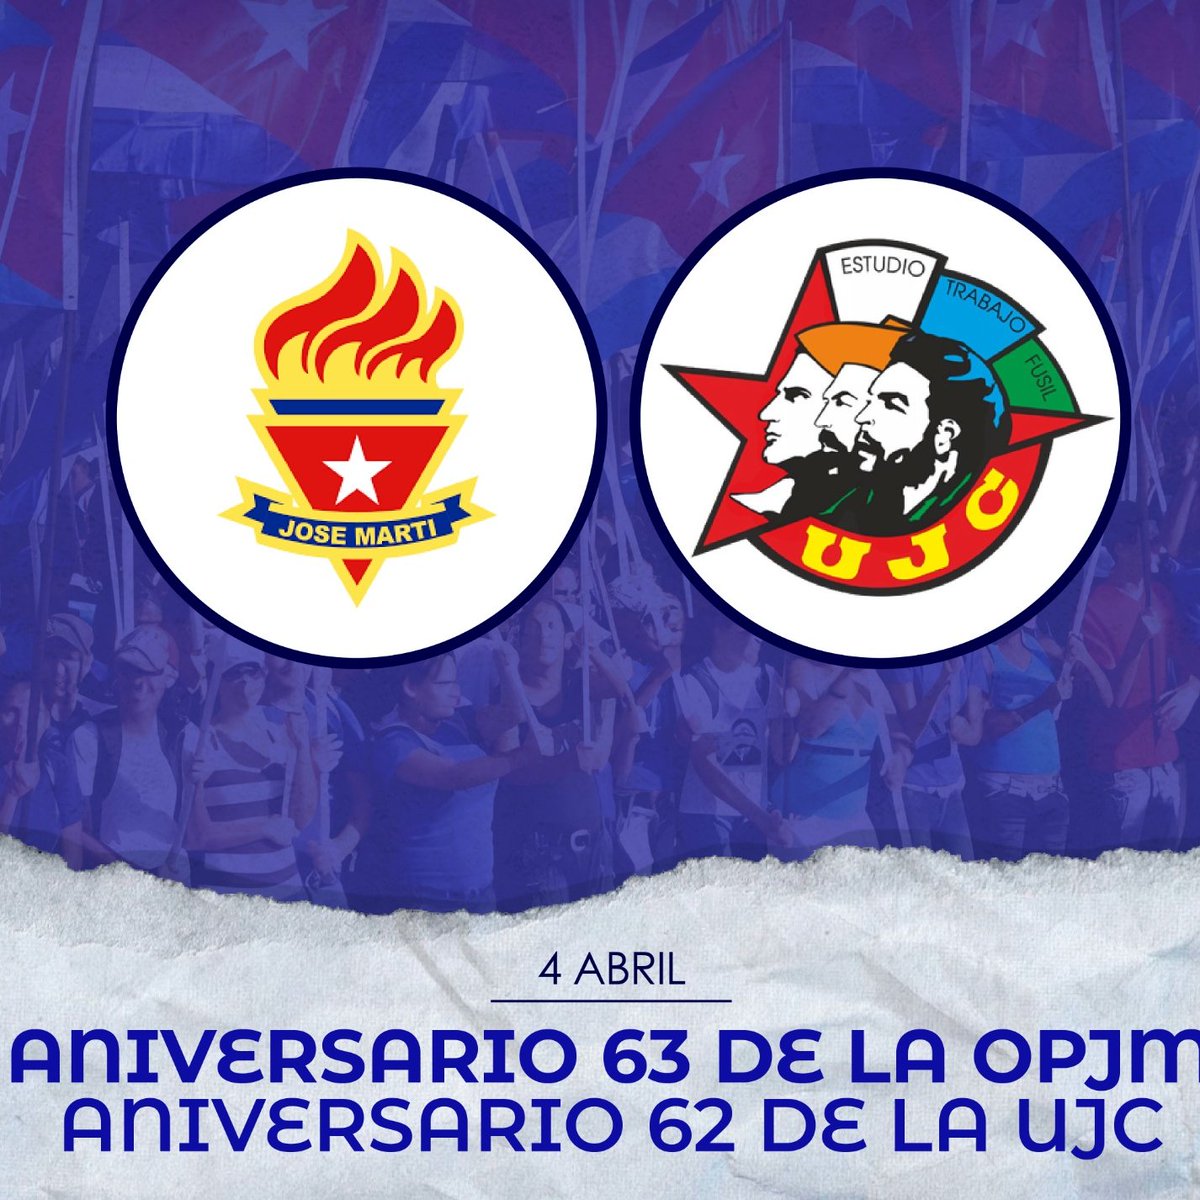 🎉¡Muchas felicidades a pioneros y jóvenes de #Cuba por aniversarios 63 y 62 de @OPJMCuba y @UJCdeCuba! 🇨🇺